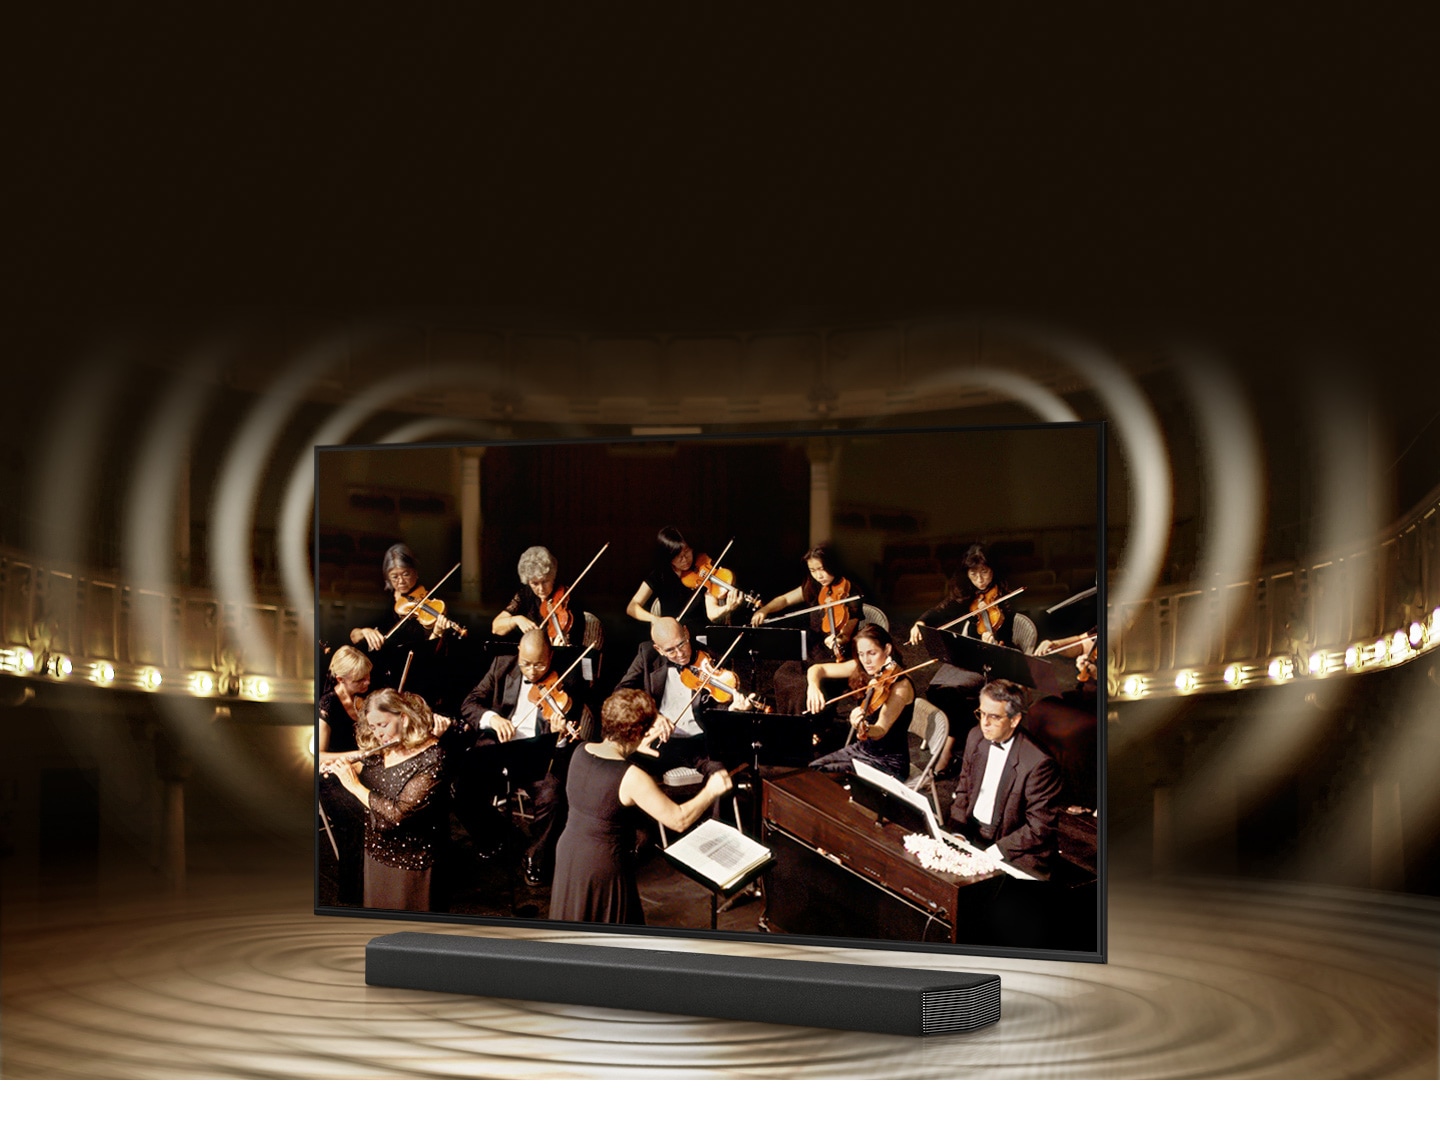 Telewizory Samsung AU7102 Q-Symphony to nowoczesny, zintegrowany system audio. Poczuj się jak na koncercie w filharmonii!